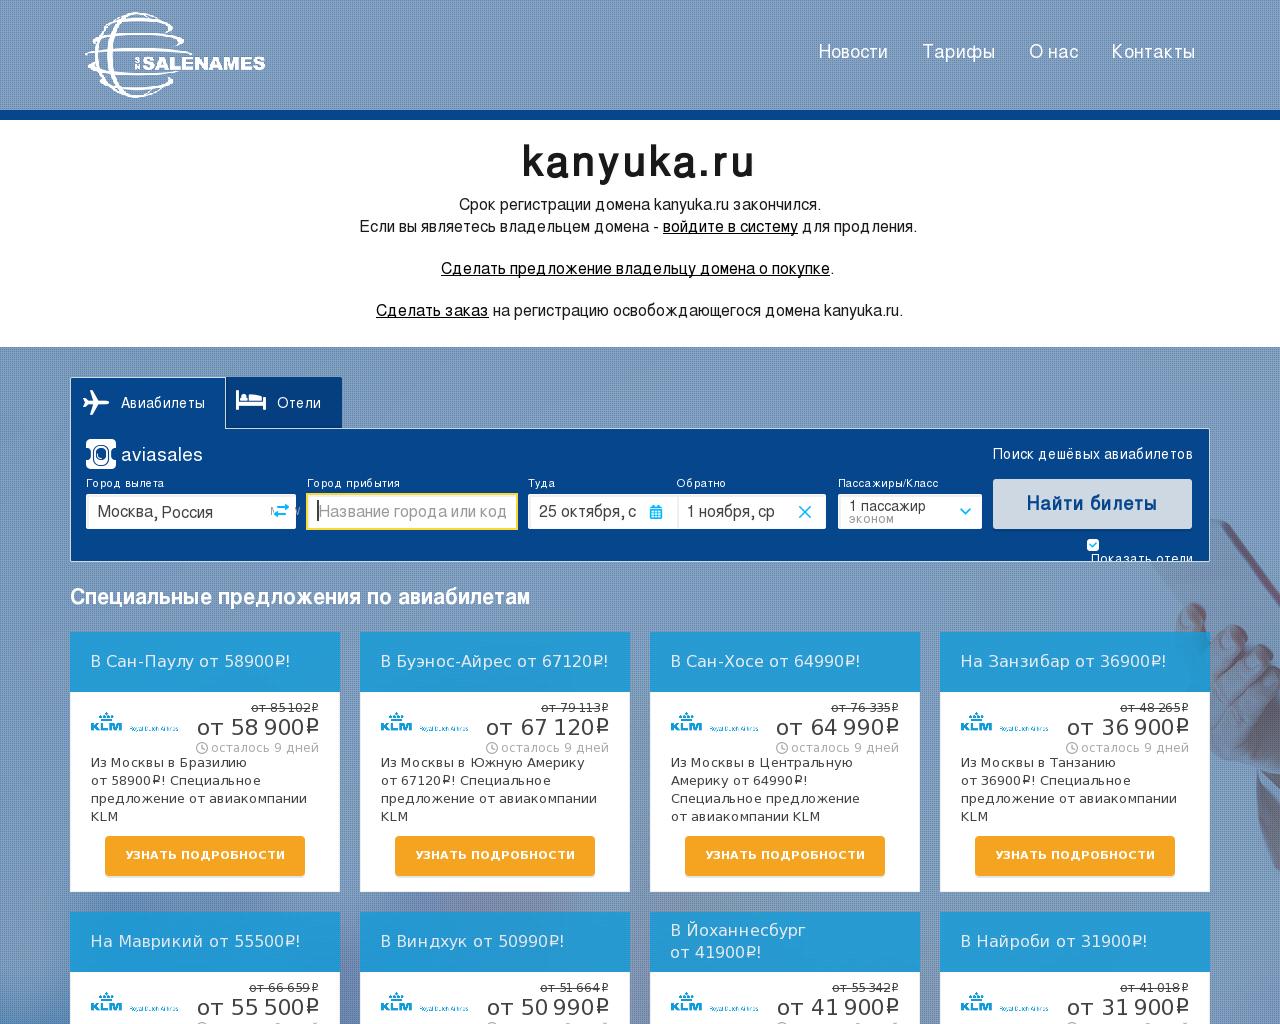 Изображение сайта kanyuka.ru в разрешении 1280x1024